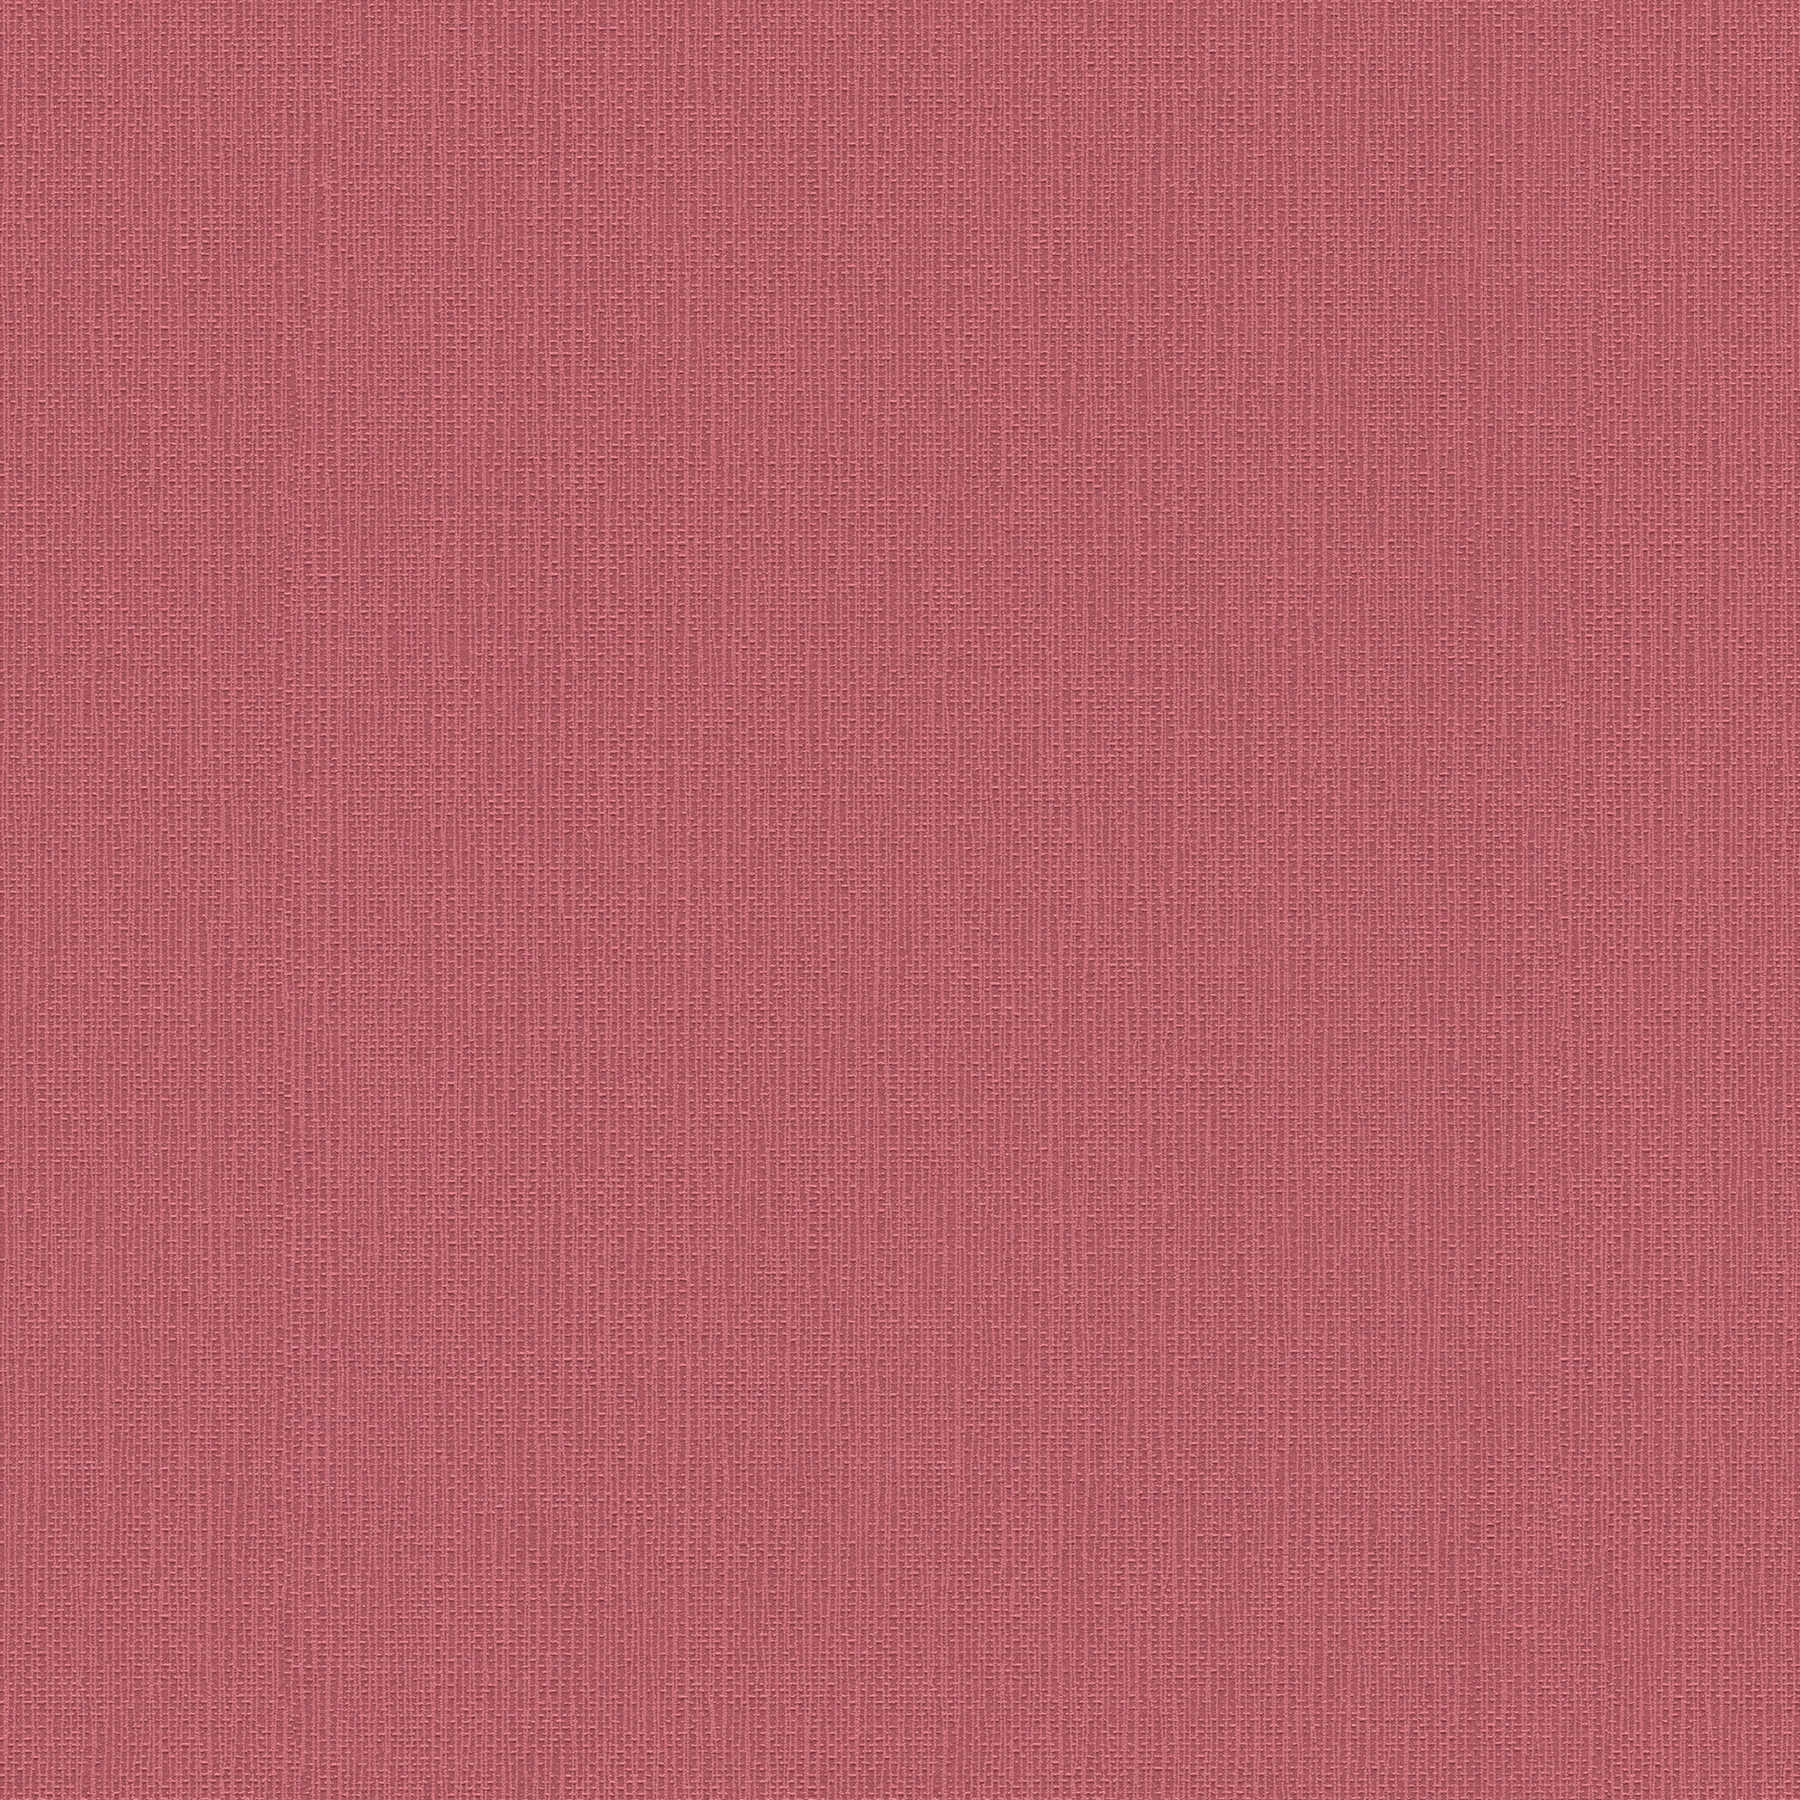 papier peint aspect lin vieux rose uni avec structure gaufrée
